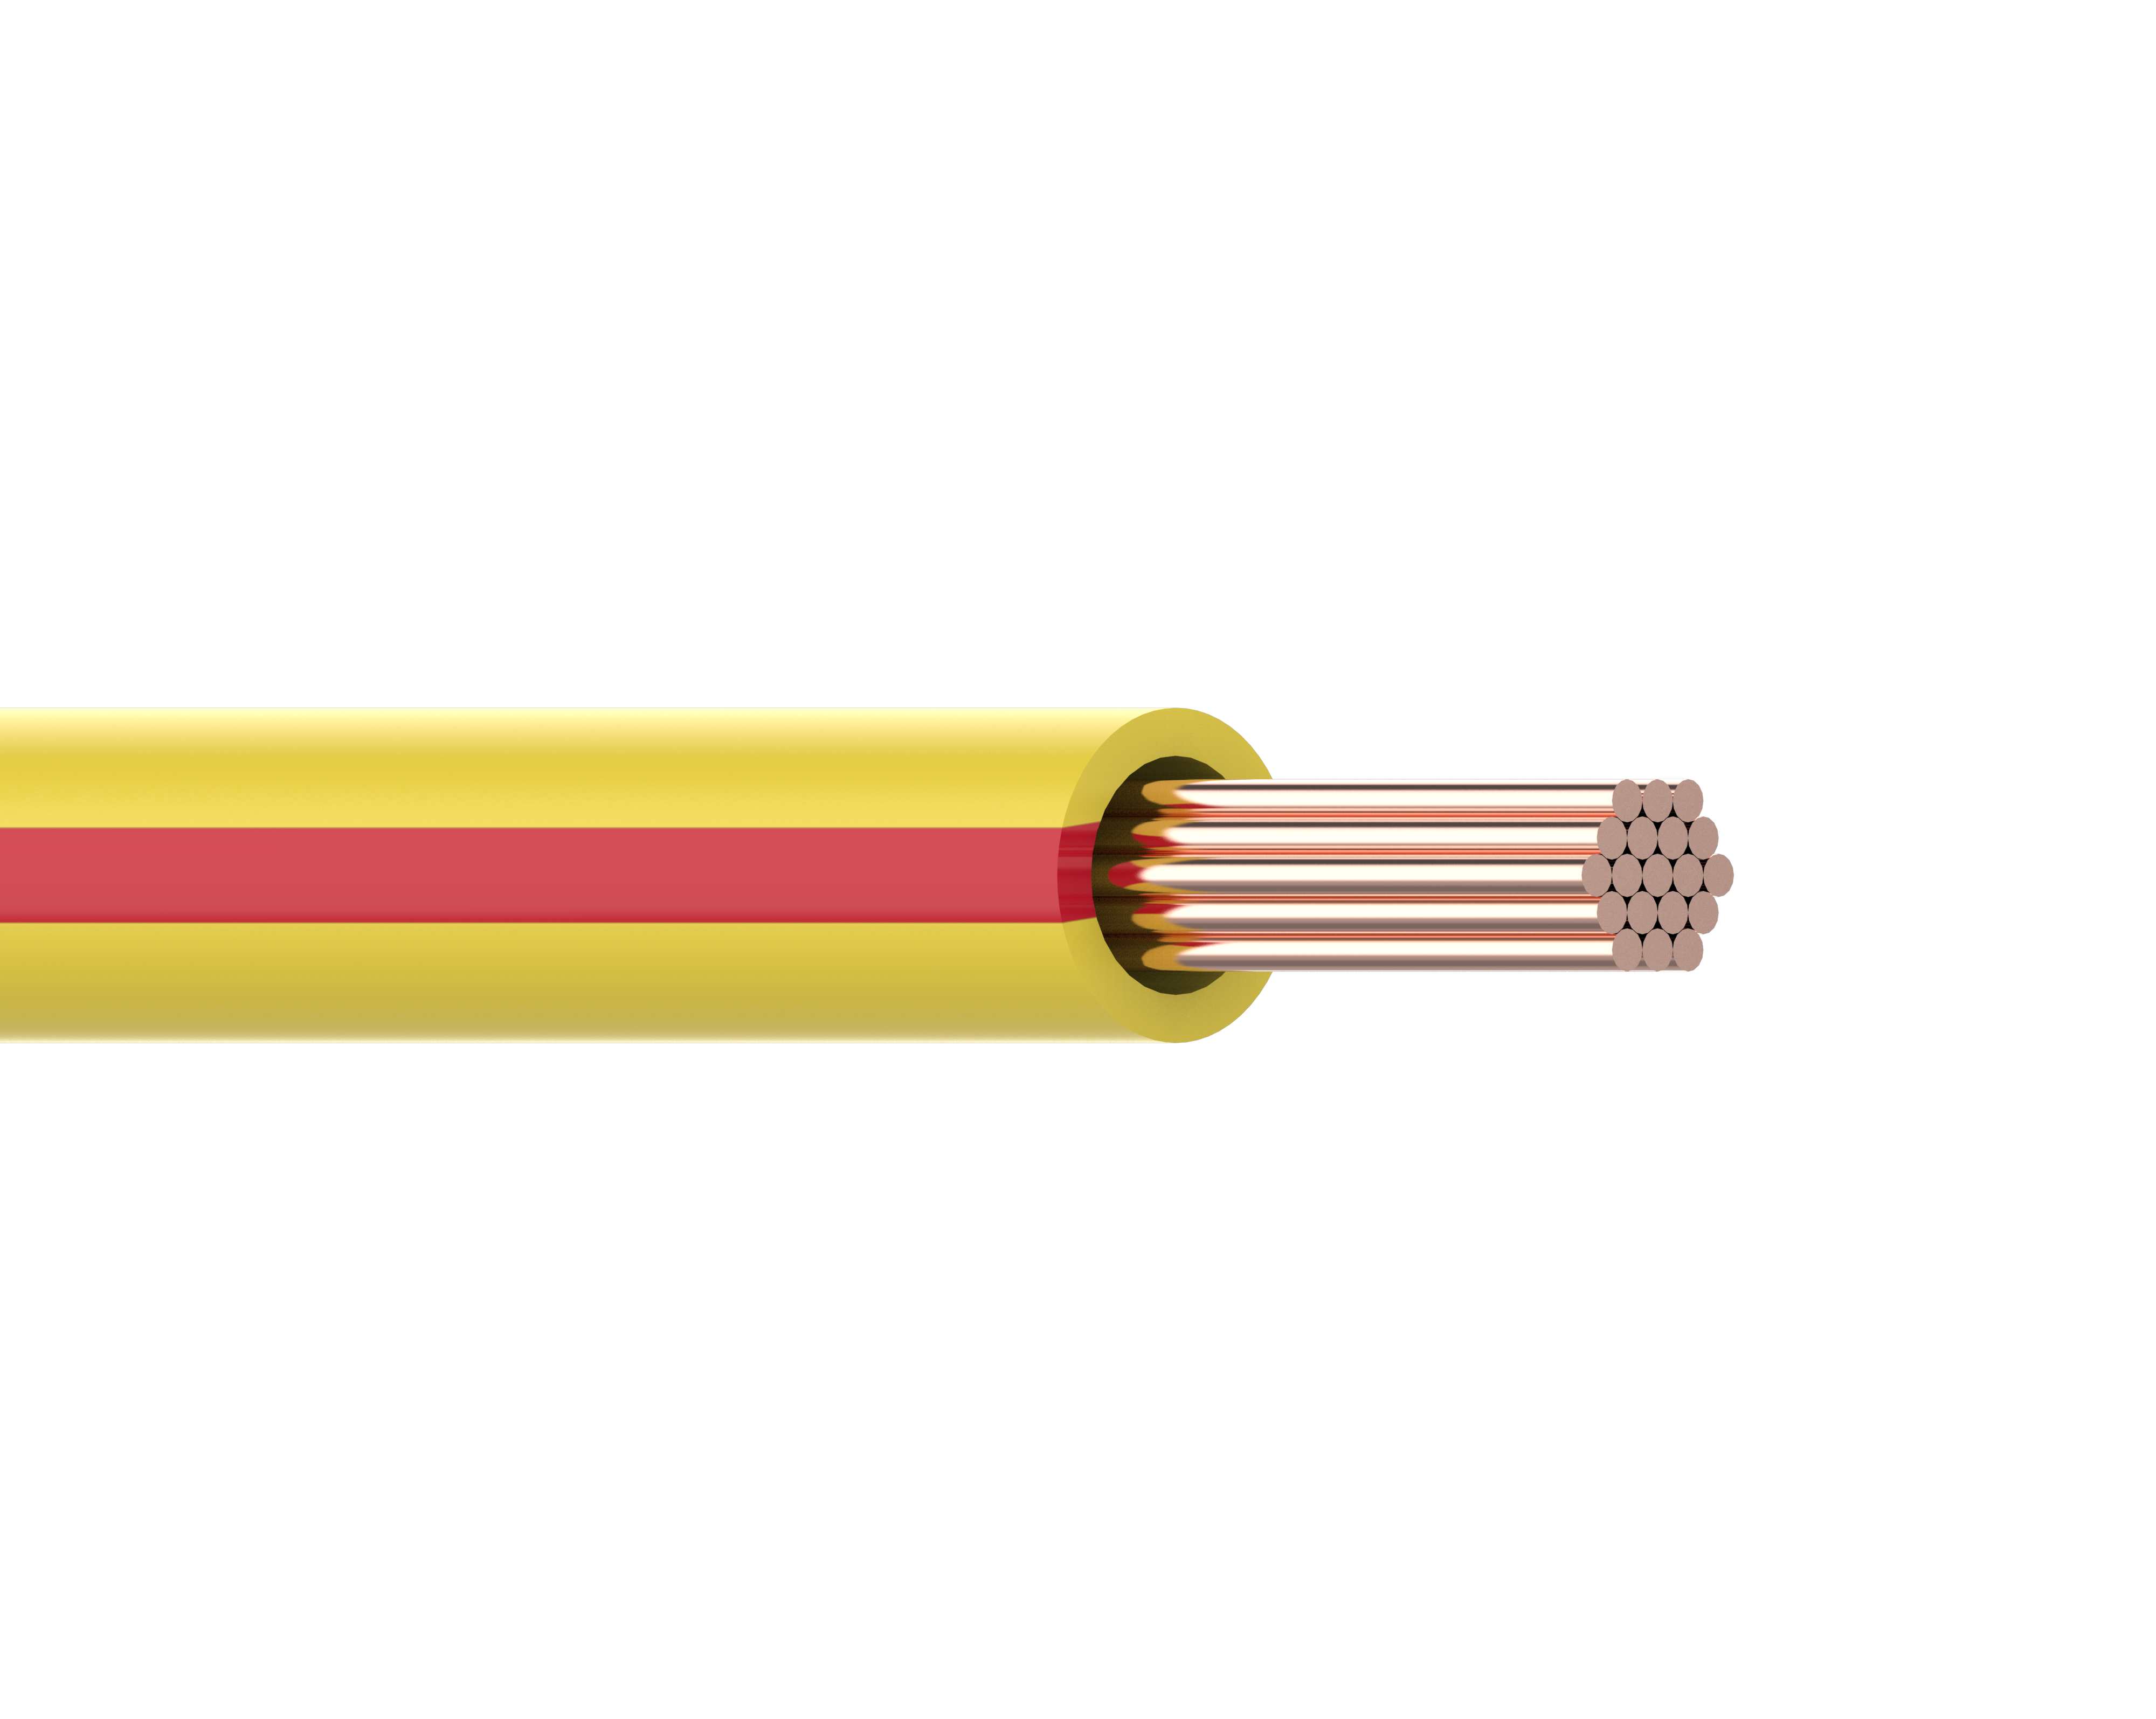 Primary wires V1 黄色+红色条纹